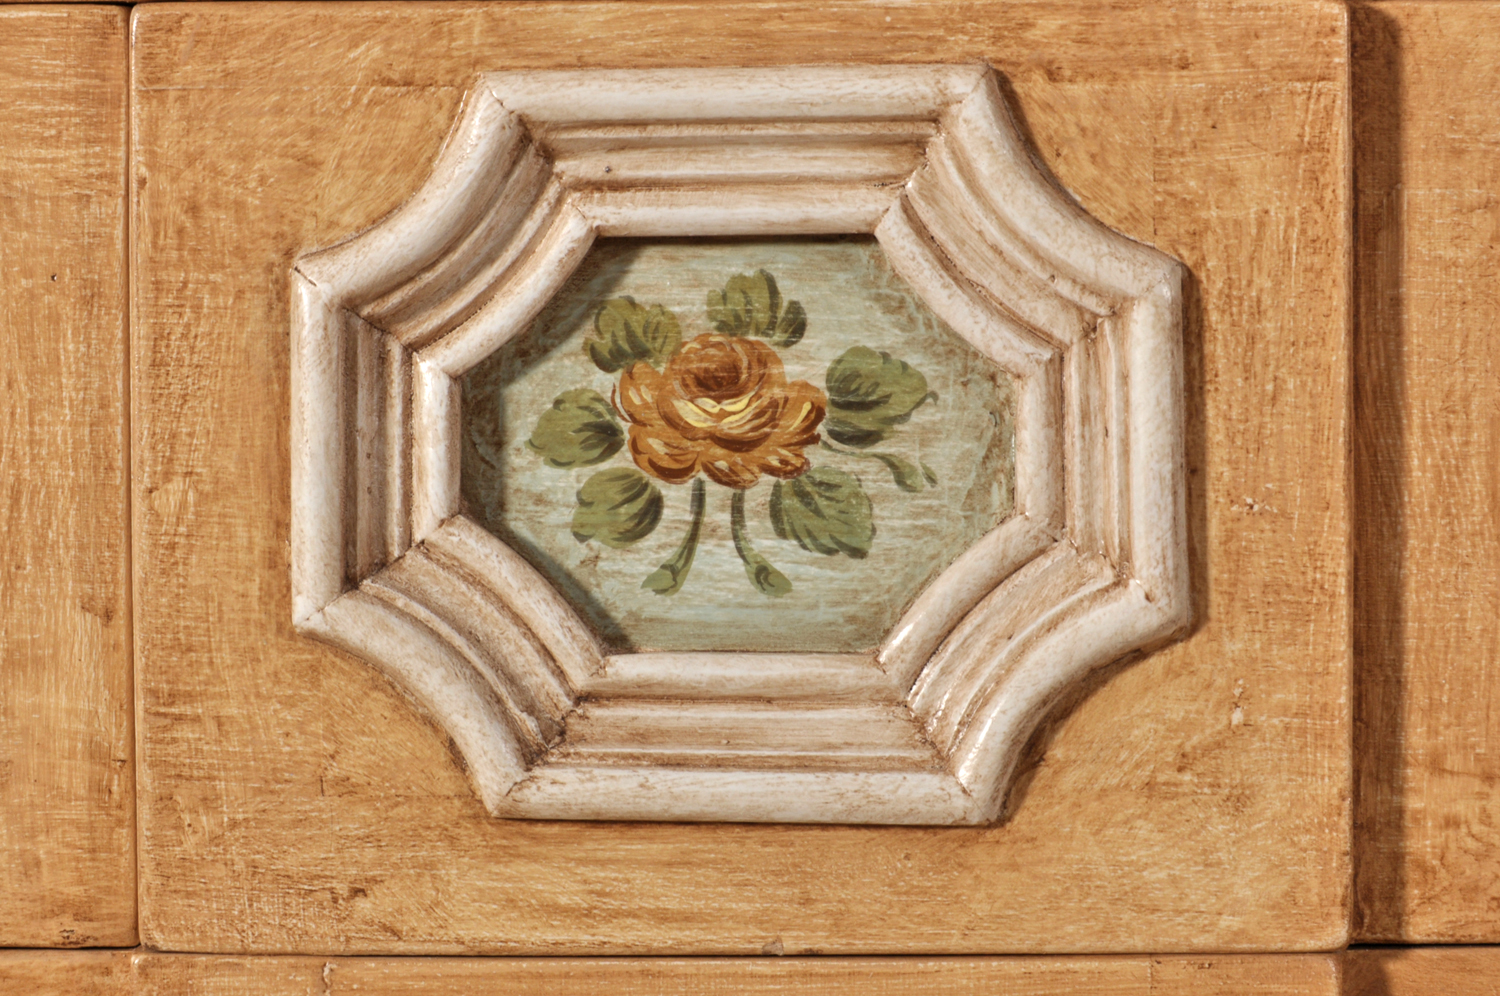 lo stile Luigi XIV barocco veneziano del cassetto segreto con bugna laccatura tonalità colori pastello a tempera lavorazioni made in Italy artigianali di pregio e di lusso eseguite a mano su misura